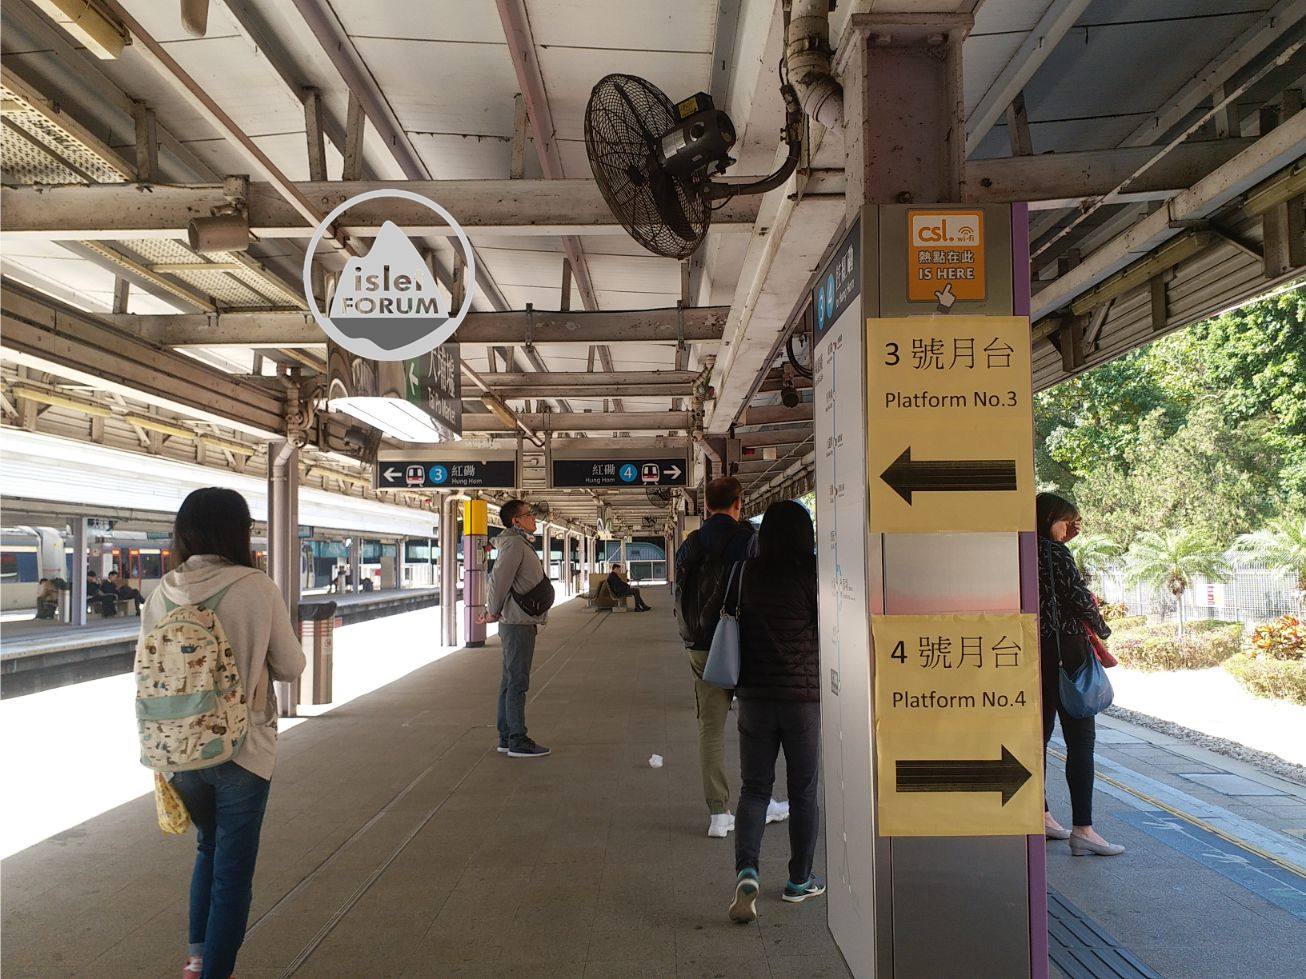 大埔墟站tai po market station4 (5).jpg